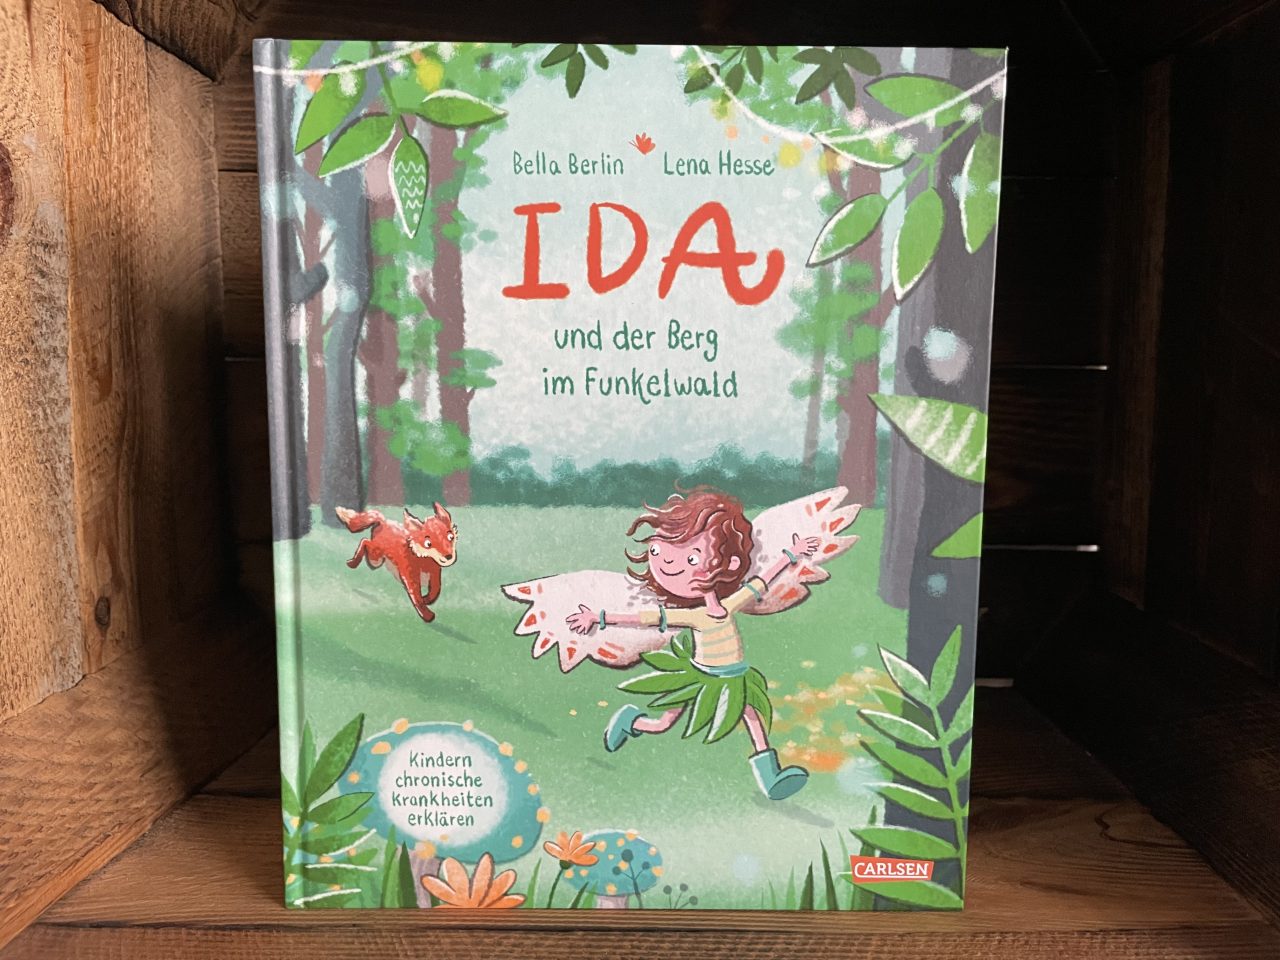 das Kinderbuch "Ida und der Berg im Funkelwald" in einer Holzkiste stehend